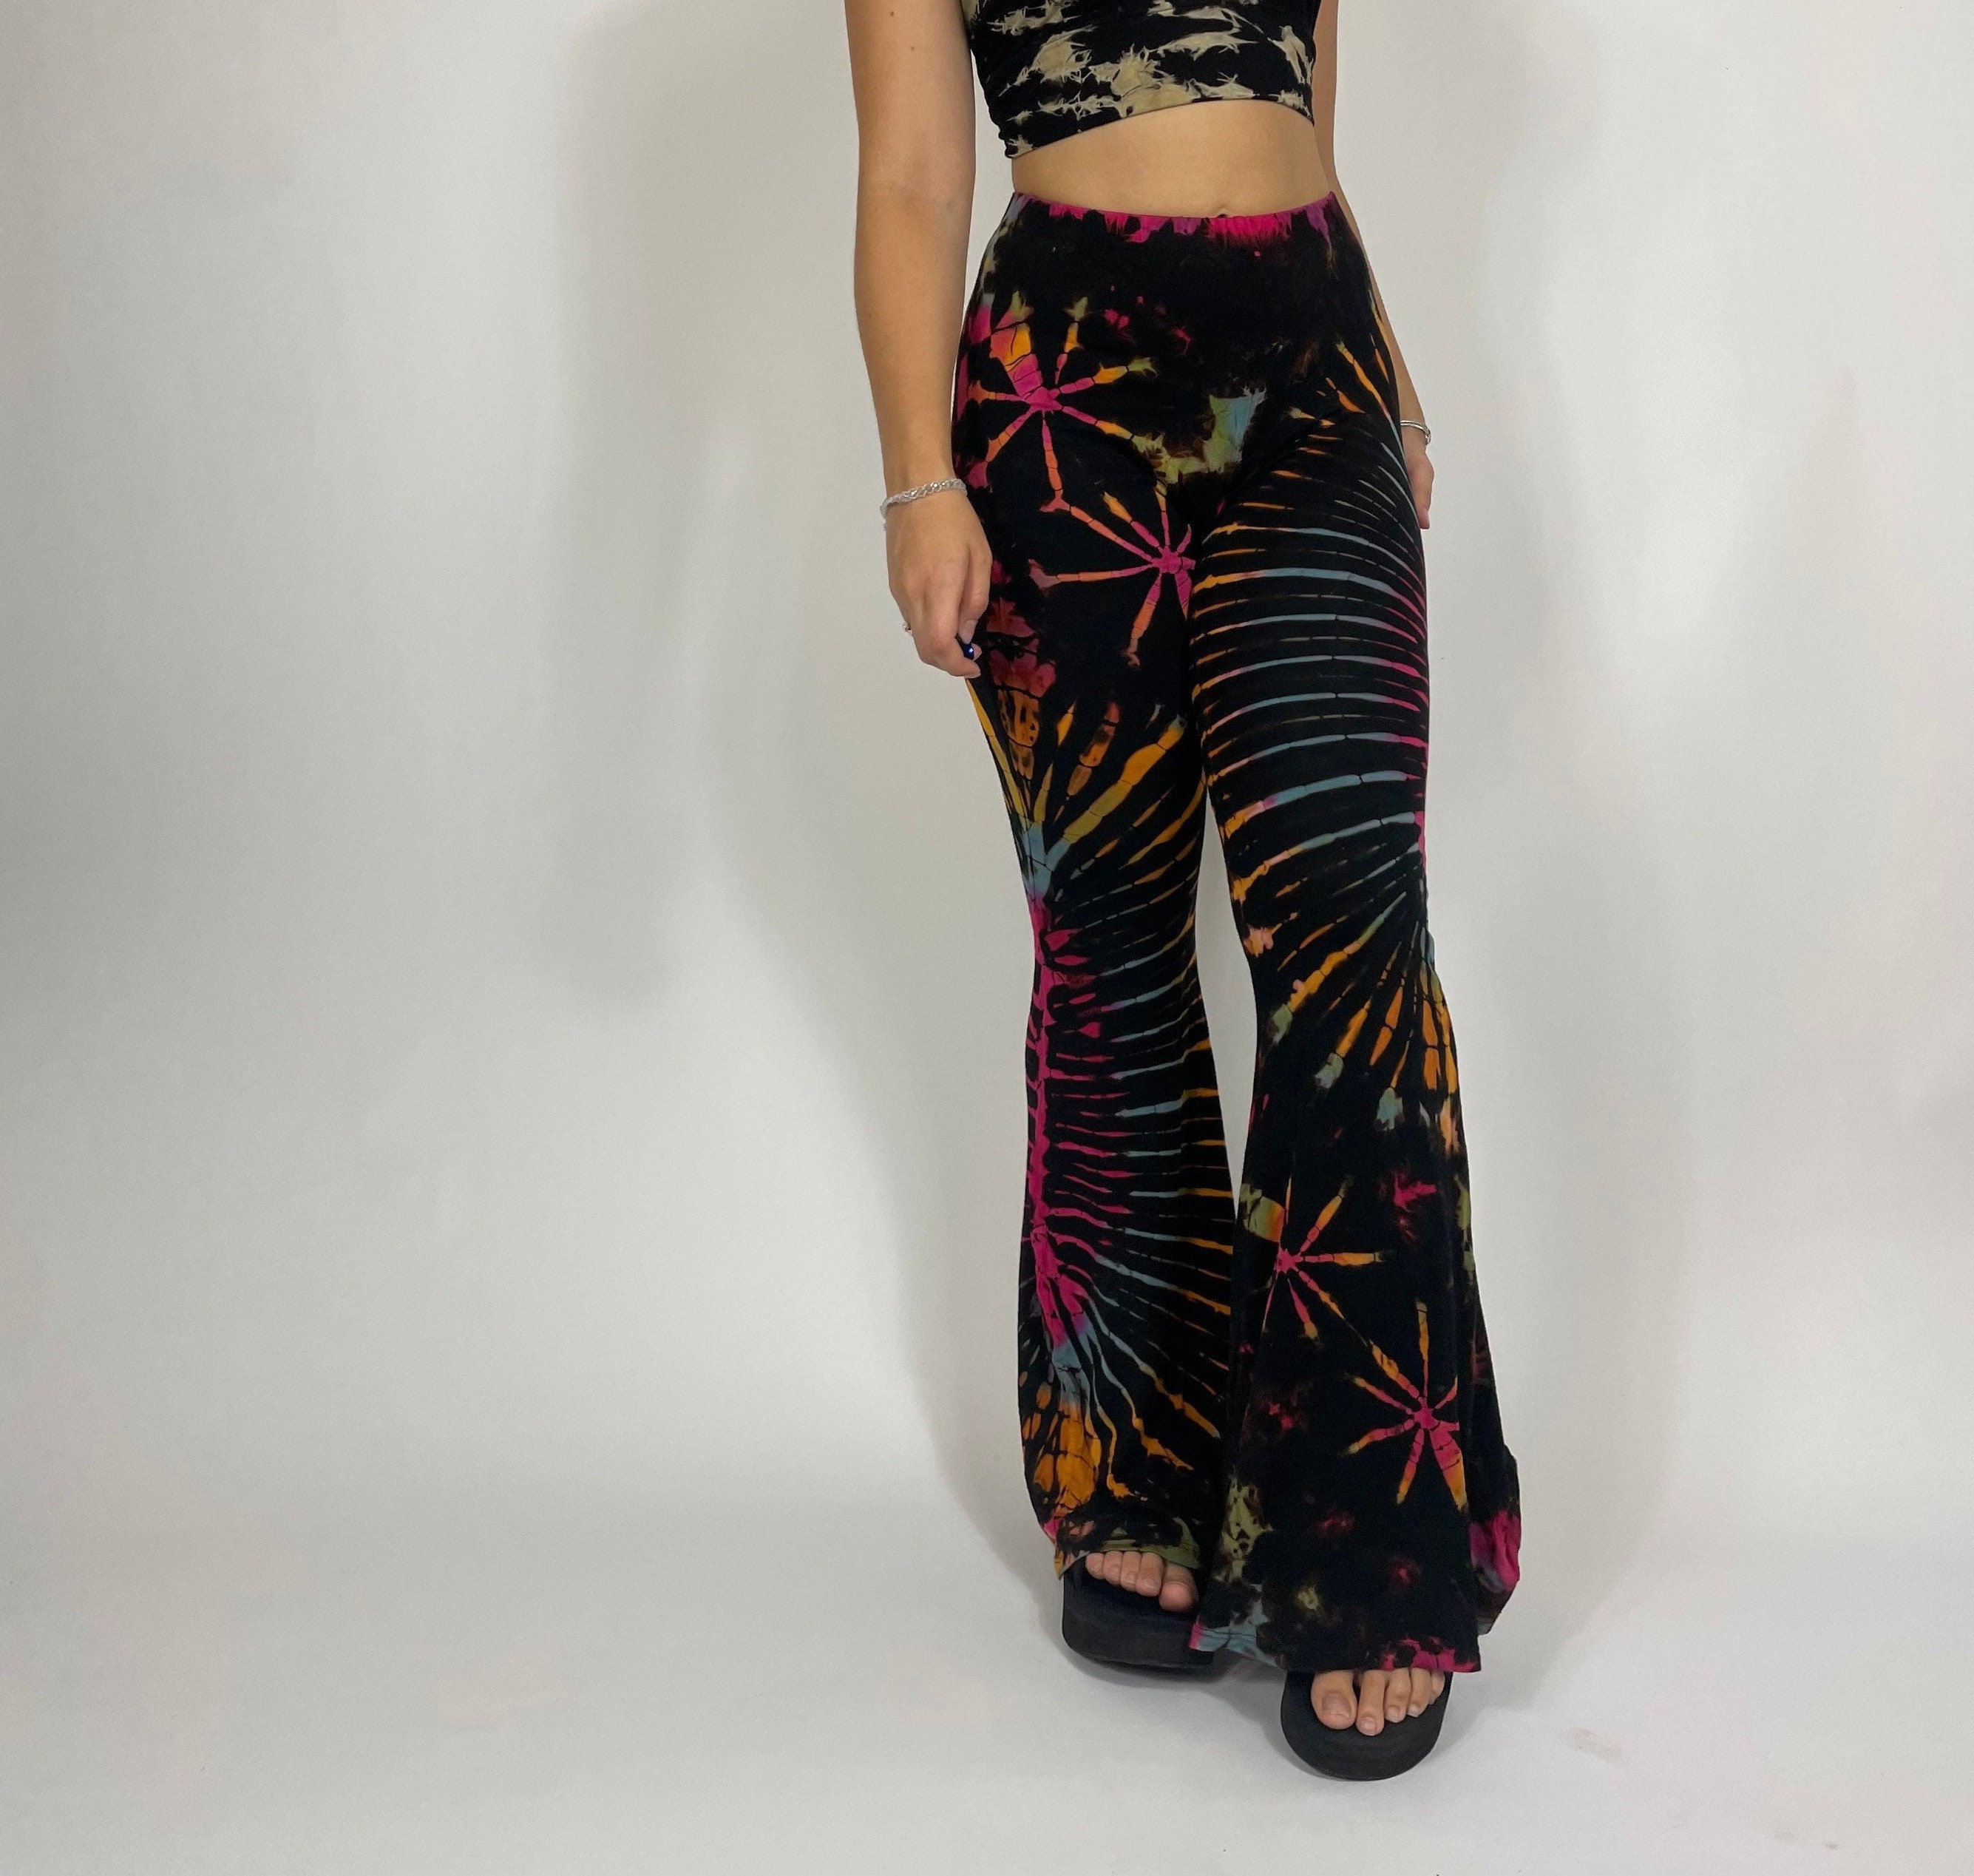 Arabella Flares in Black, Yoga Pants, 70s Pants, Tie Dye Hippie Pants 